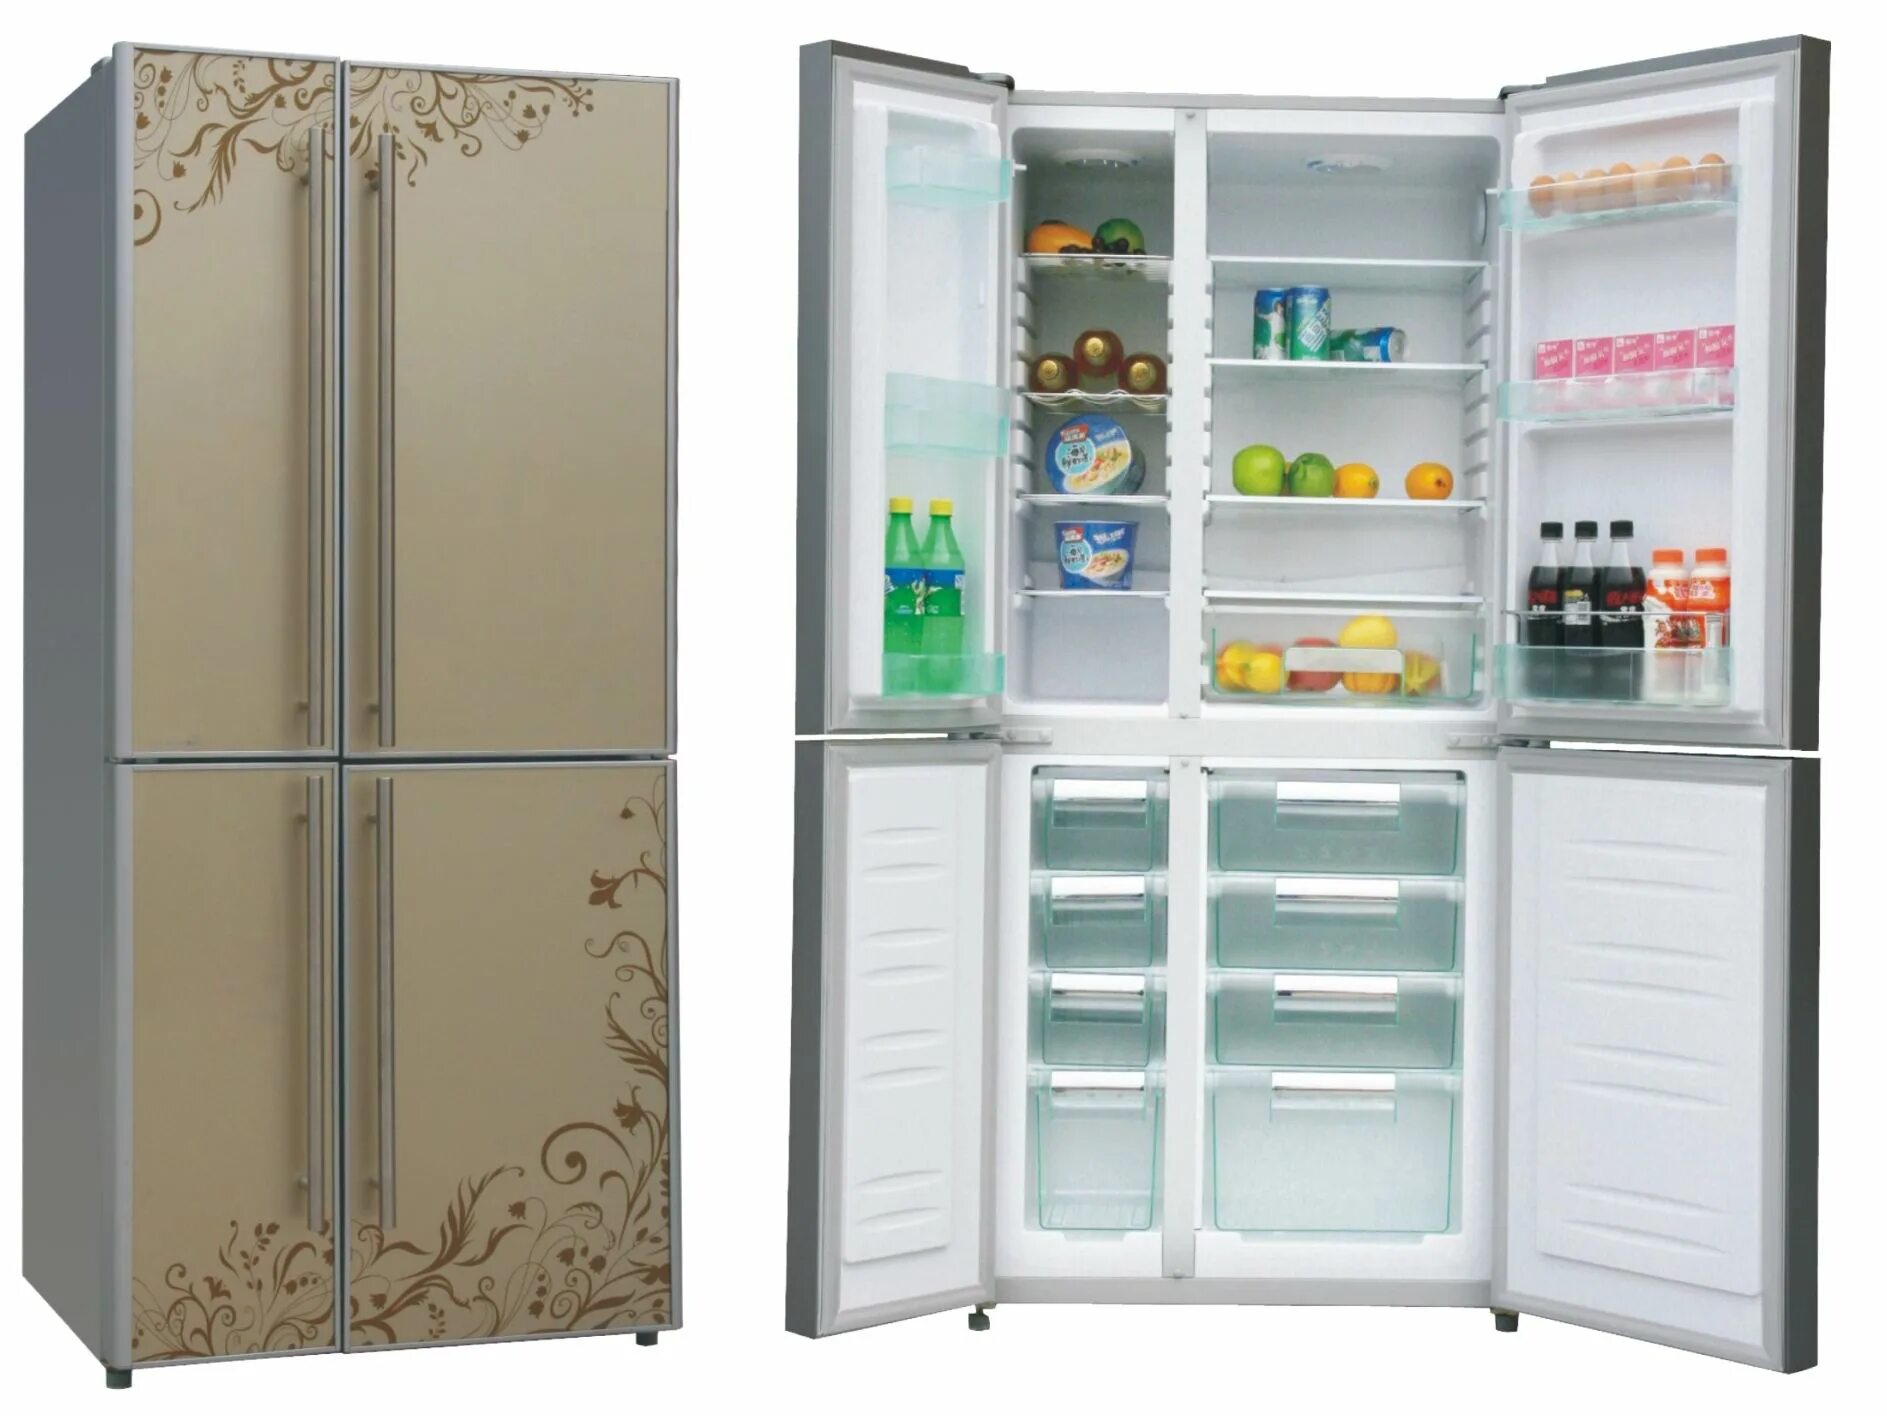 Купить холодильник в челнах. Холодильник (Side-by-Side) Ascoli acdb520wib. Холодильник (Side-by-Side) LG GC-q247cbdc. Холодильник Side by Side с большой морозилкой. Холодильник (Side-by-Side) Thomson ssc30ei32.